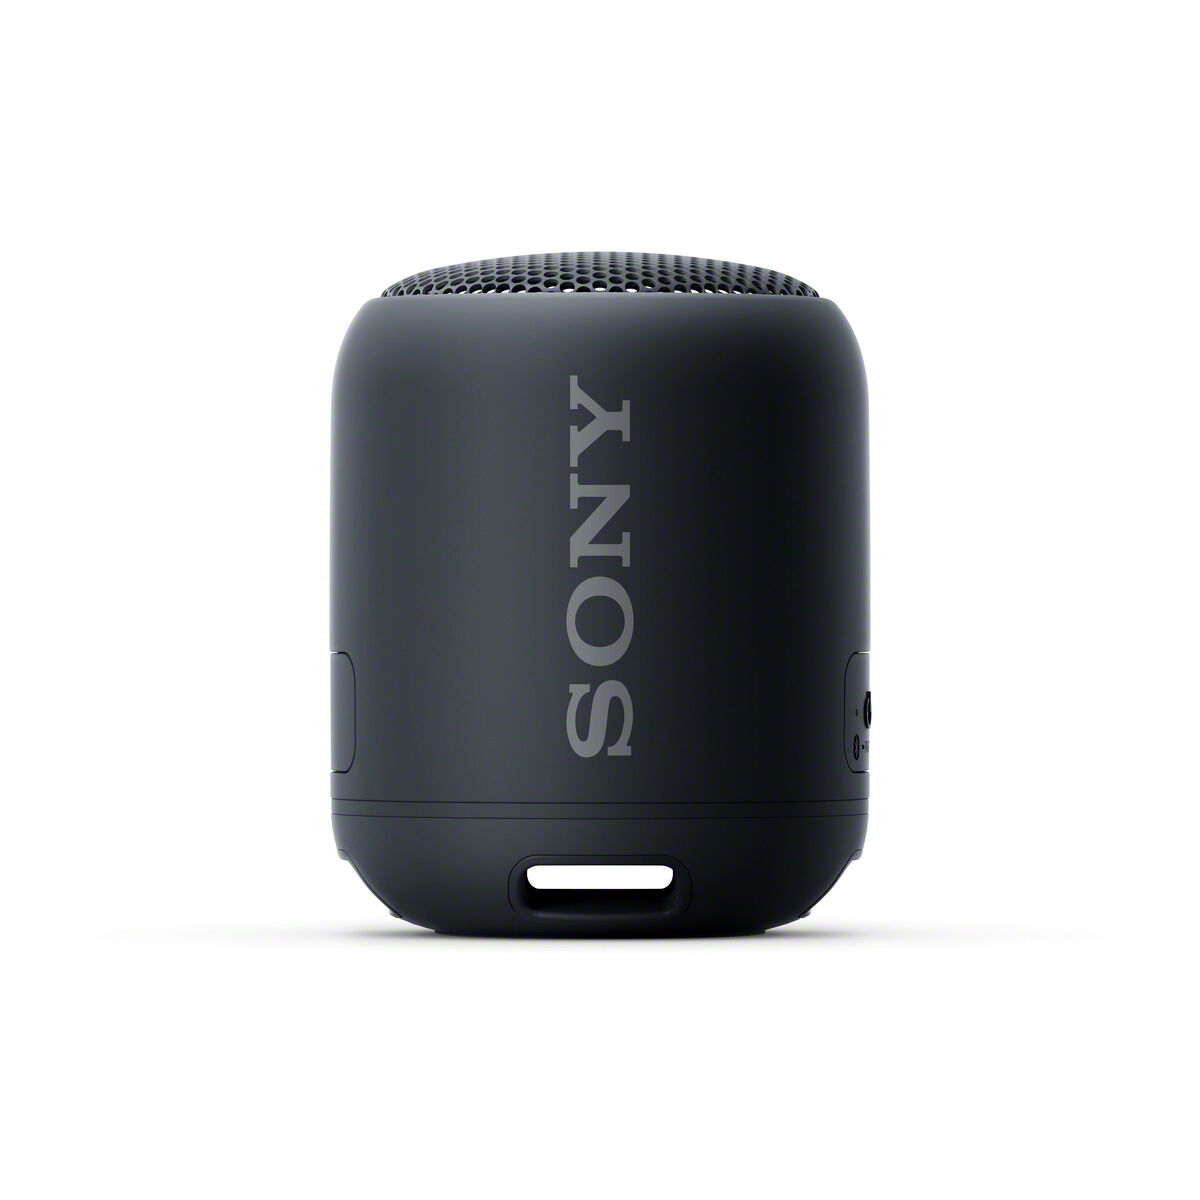 Boxa portabila SRSXB12B Sony, Extra Bass, Bluetooth Wi-Fi, 16h Autonomie, Rezistenta la apa IP67, Negru